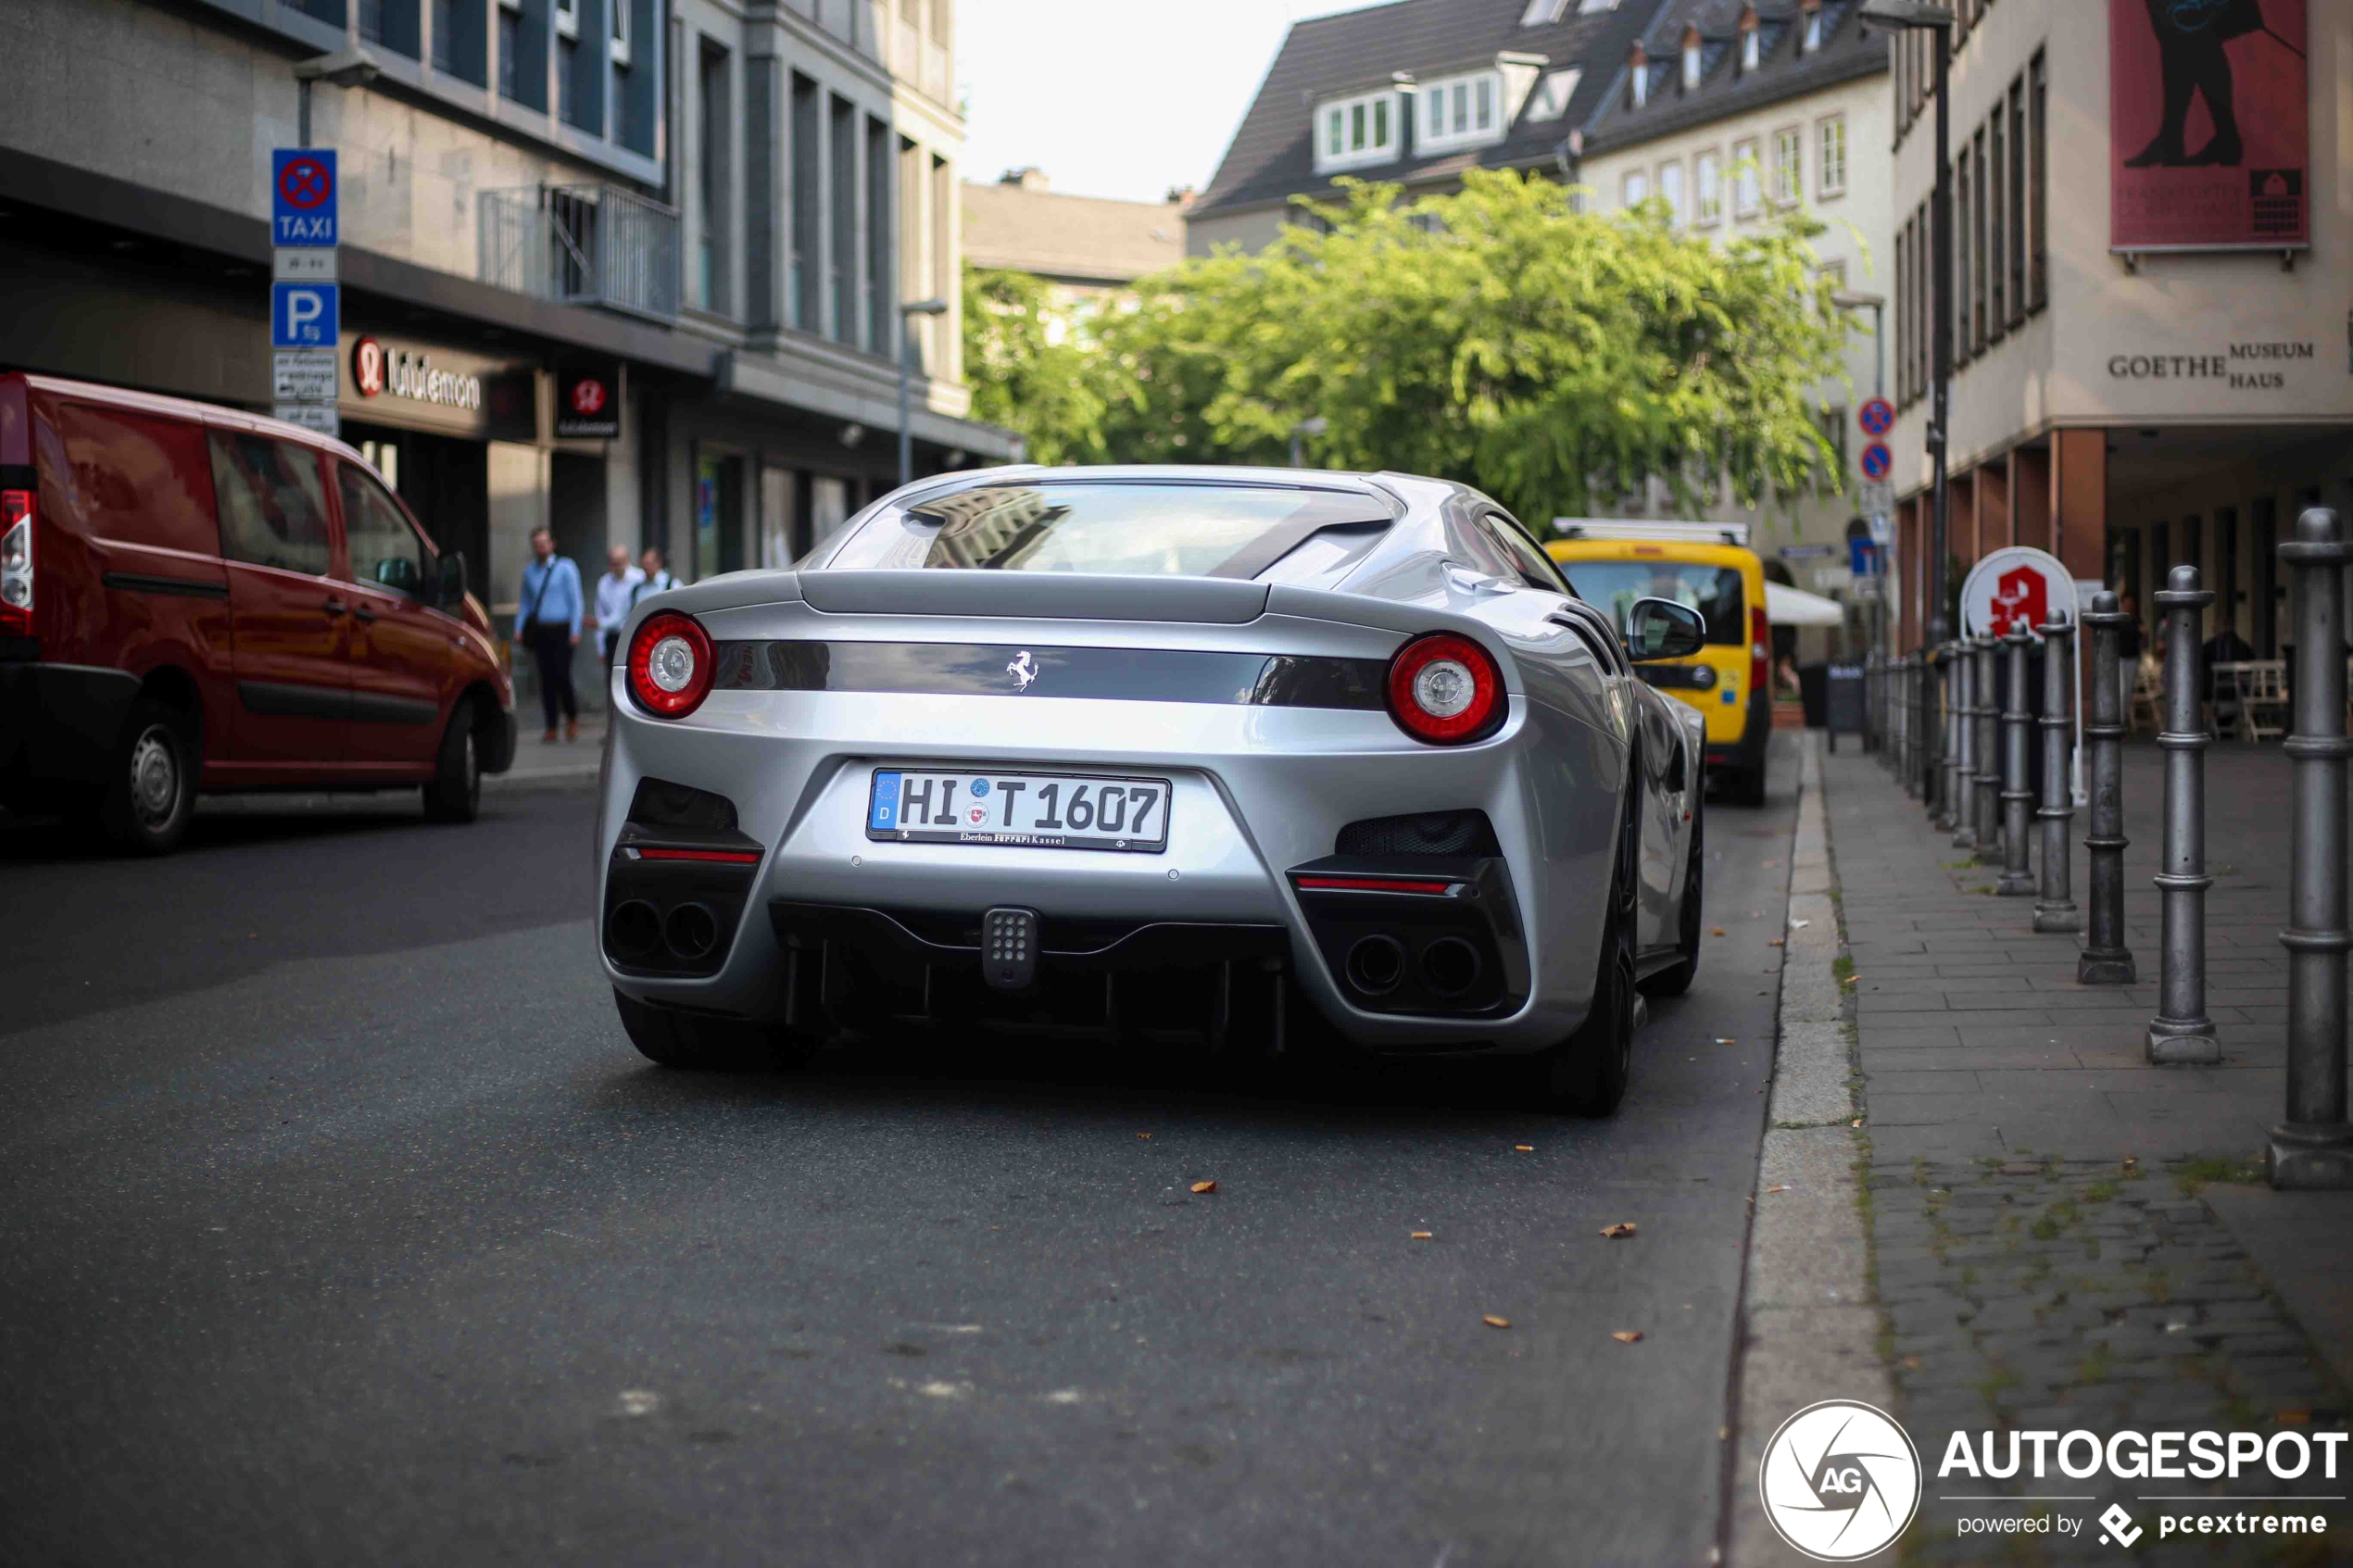 Zilvergrijze Ferrari F12tdf staat troosteloos op straat in Frankfurt